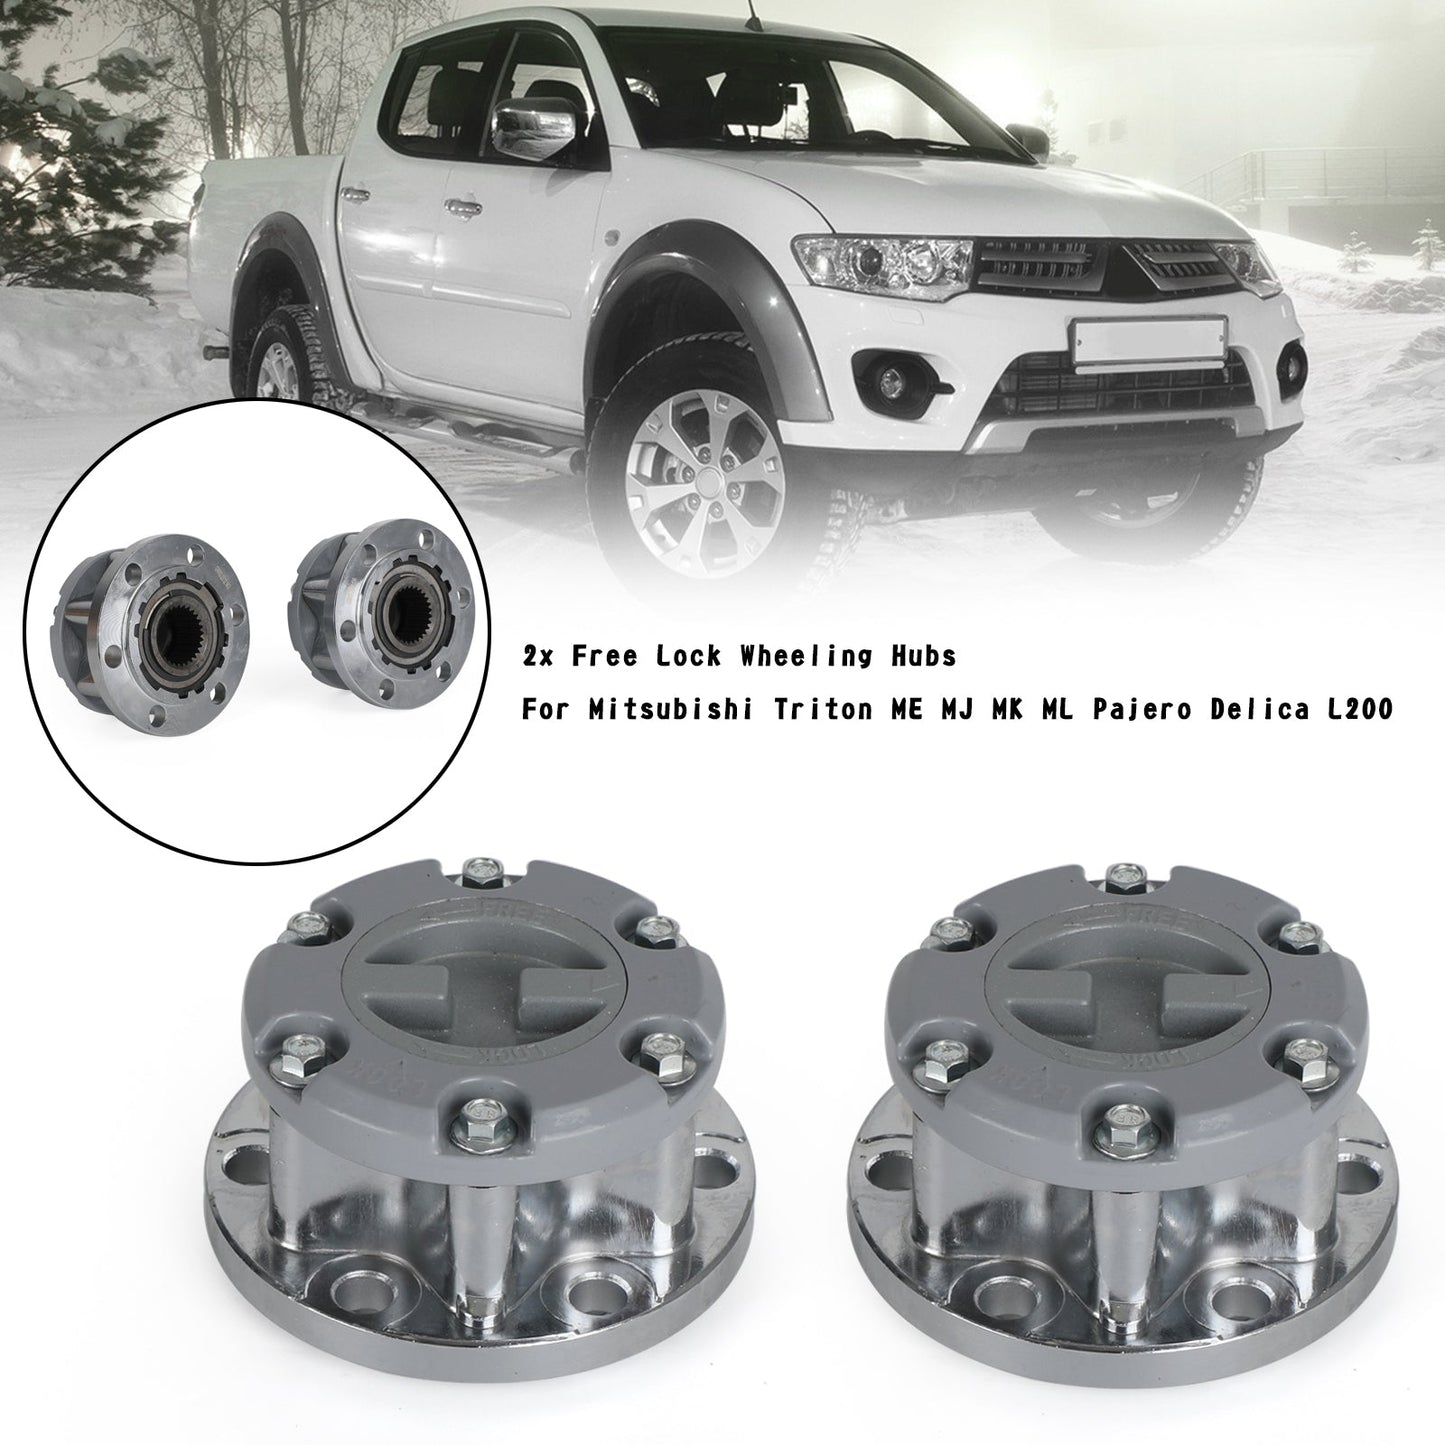 2x Free Lock Wheeling Hubs For Mitsubishi Triton ME MJ MK ML Pajero Delica L200